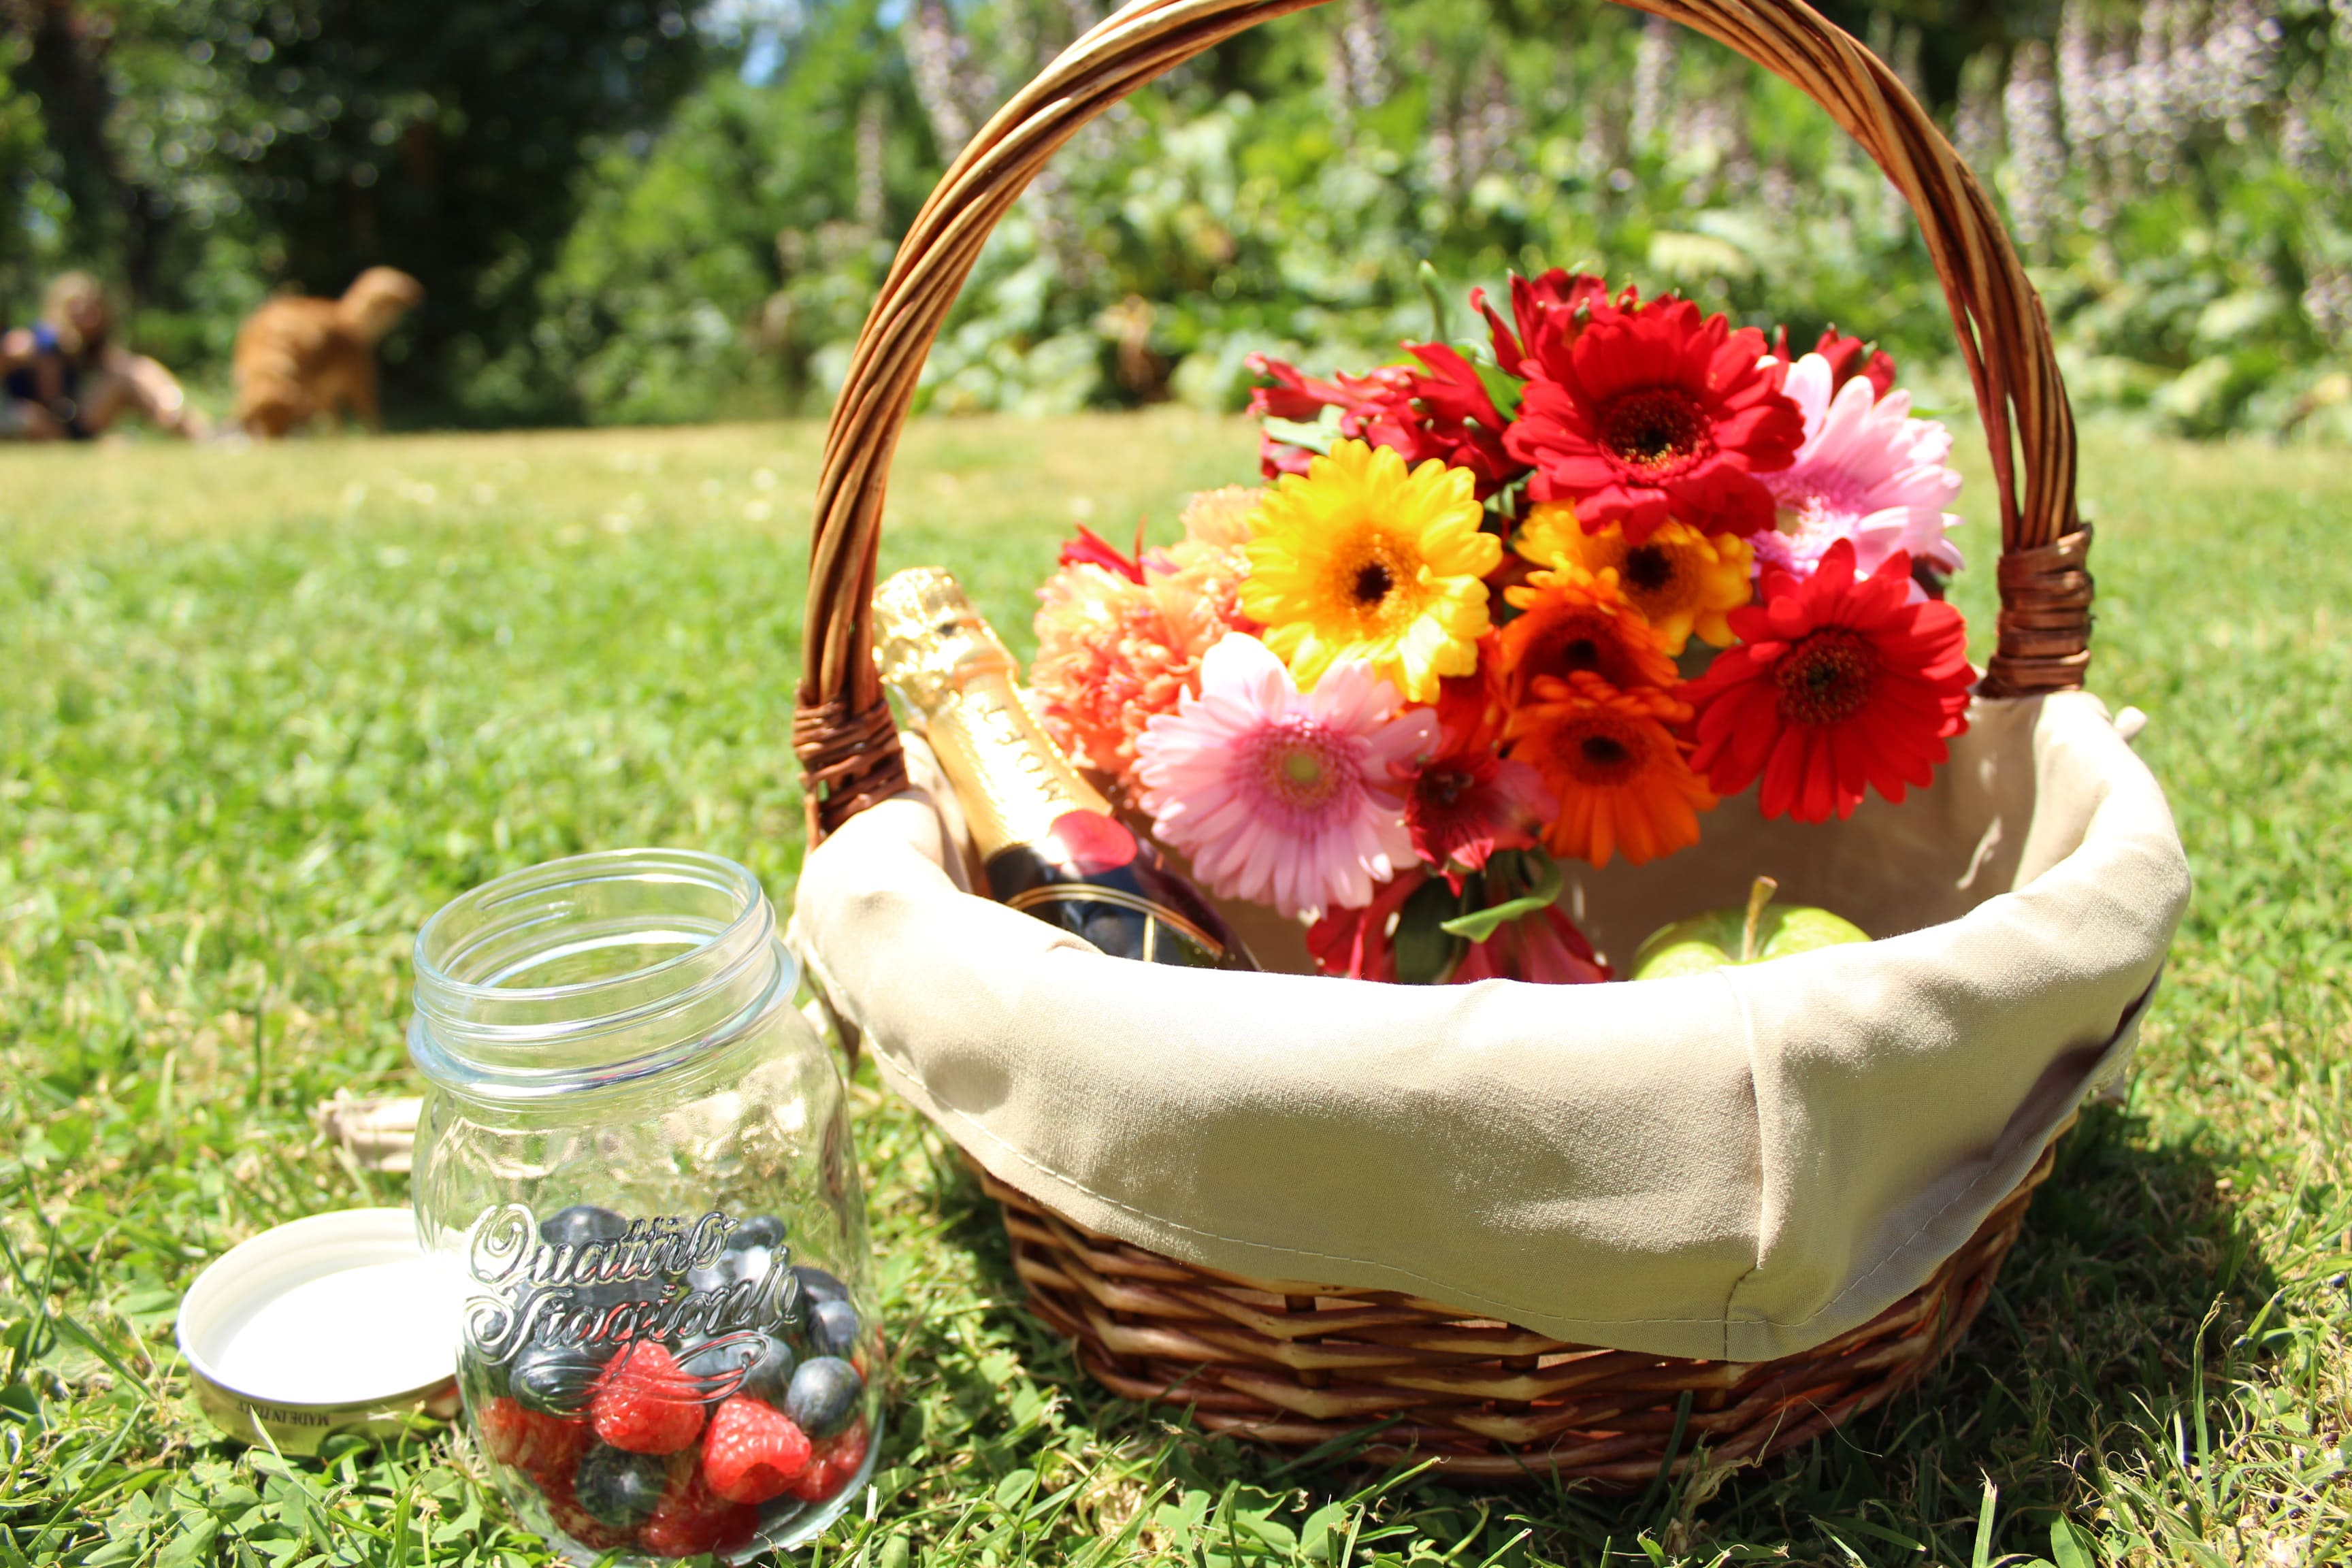 Una cesta de mimbre llena de gerberas en un campo con un tarro de vidrio al lado